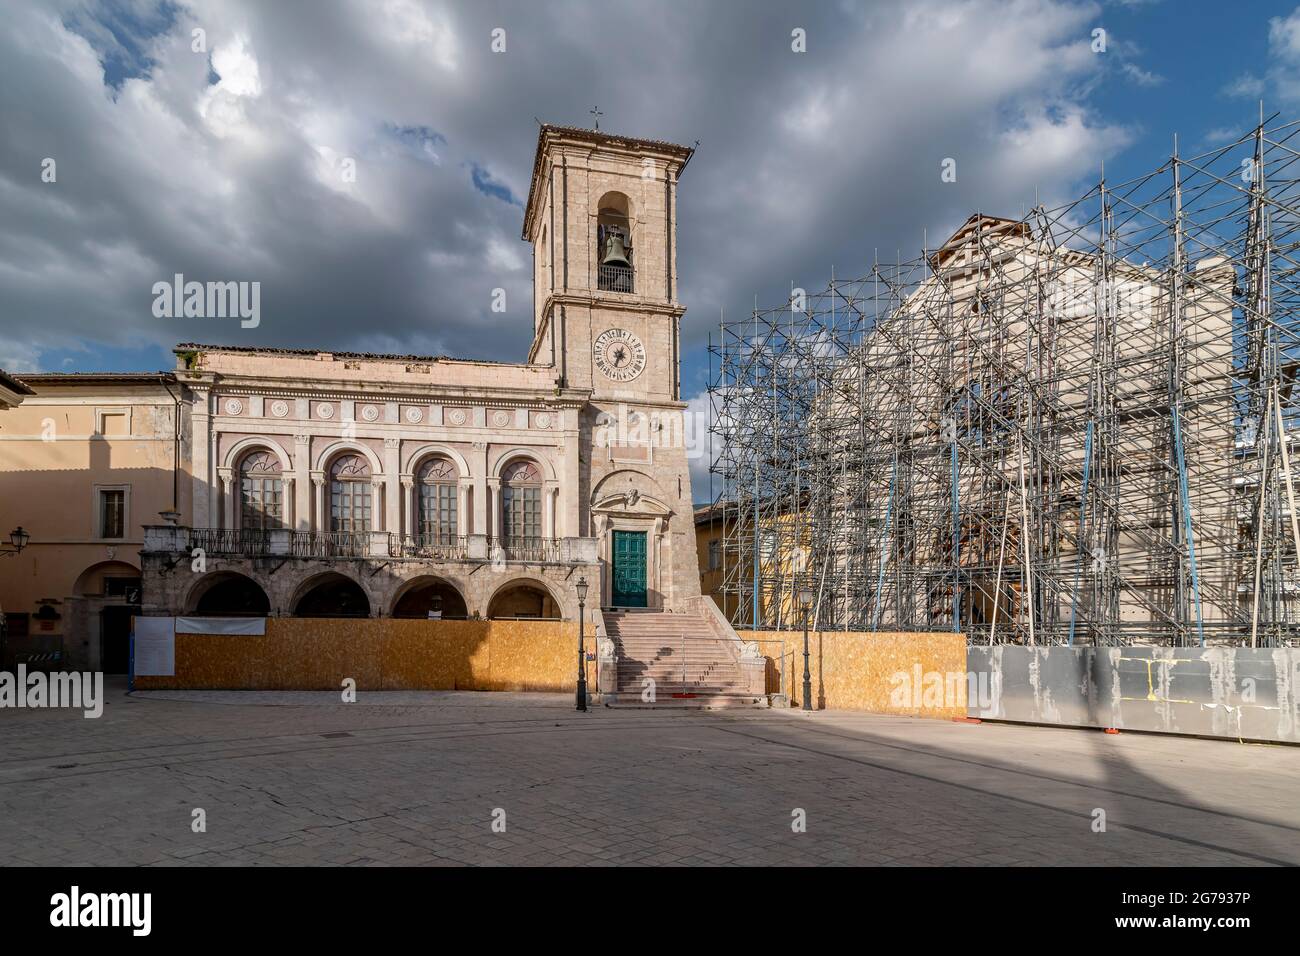 La facciata del Palazzo comunale di Norcia, Perugia, Italia, accanto alla basilica di San Benedetto, distrutta dal terremoto, sotto un cielo drammatico Foto Stock